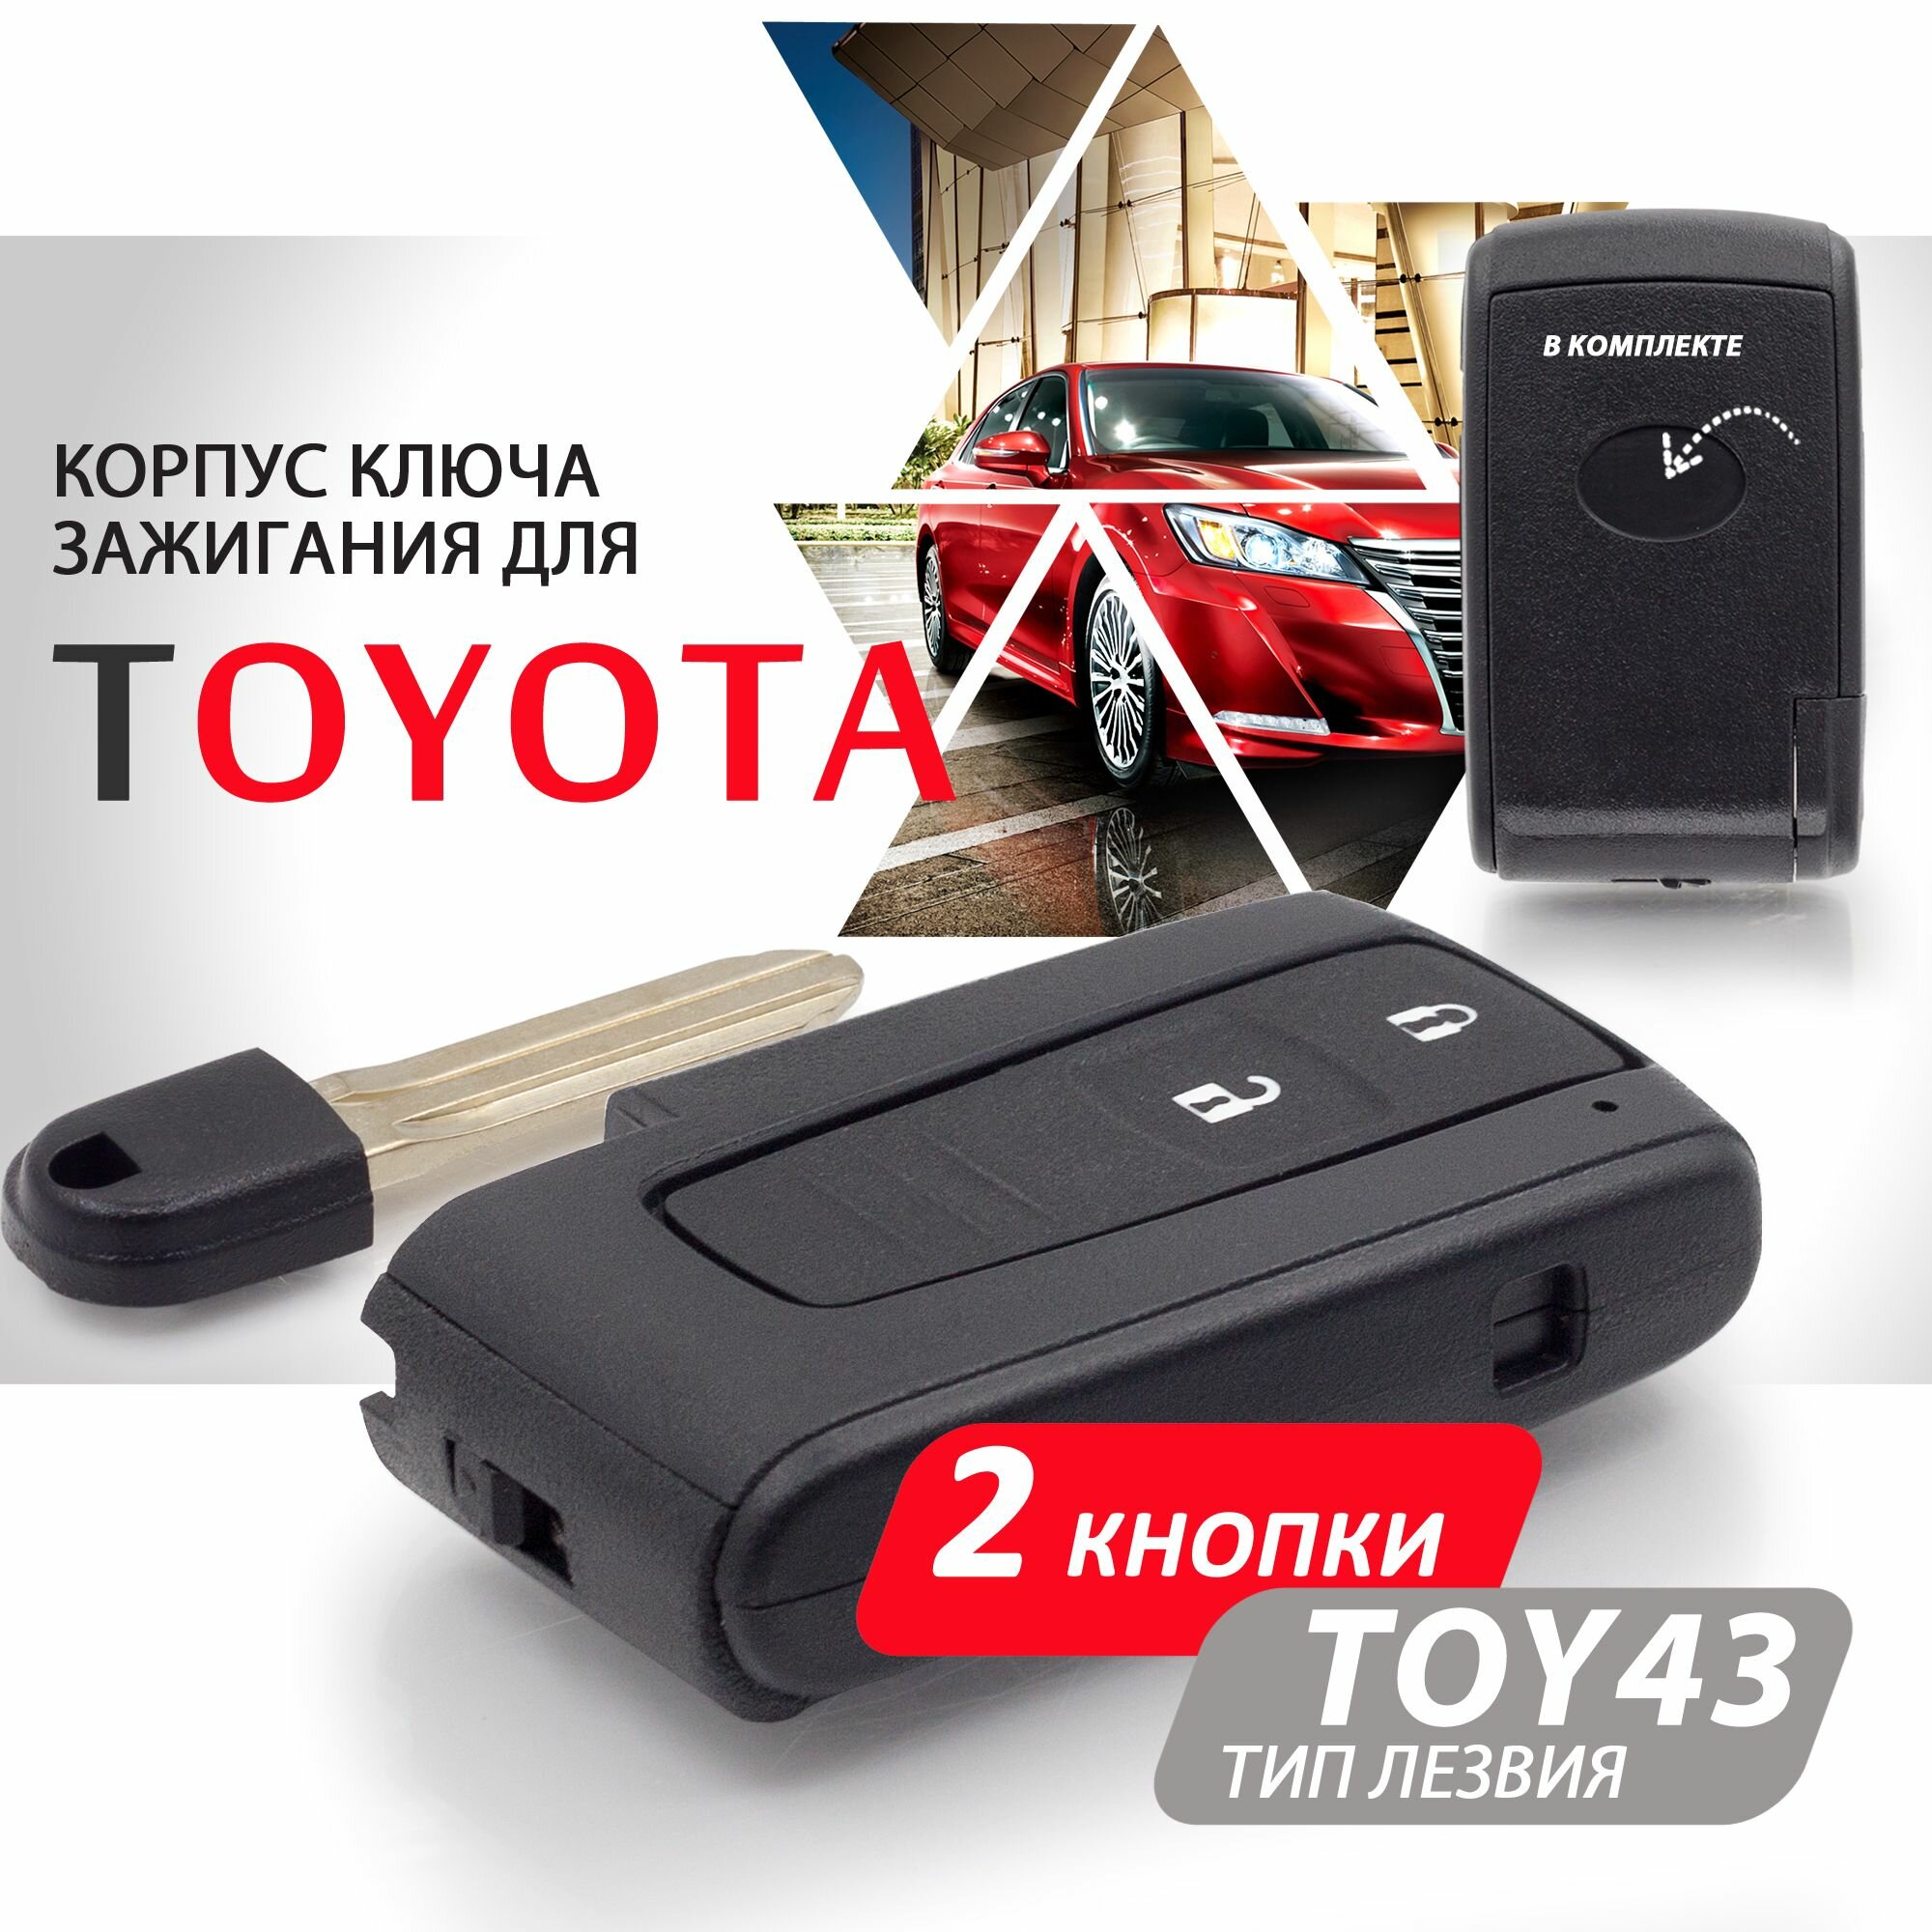 Корпус смарт ключа зажигания для Toyota / Тойота с лезвием TOY43 - 2 кнопки / Брелок зажигания автомобильный